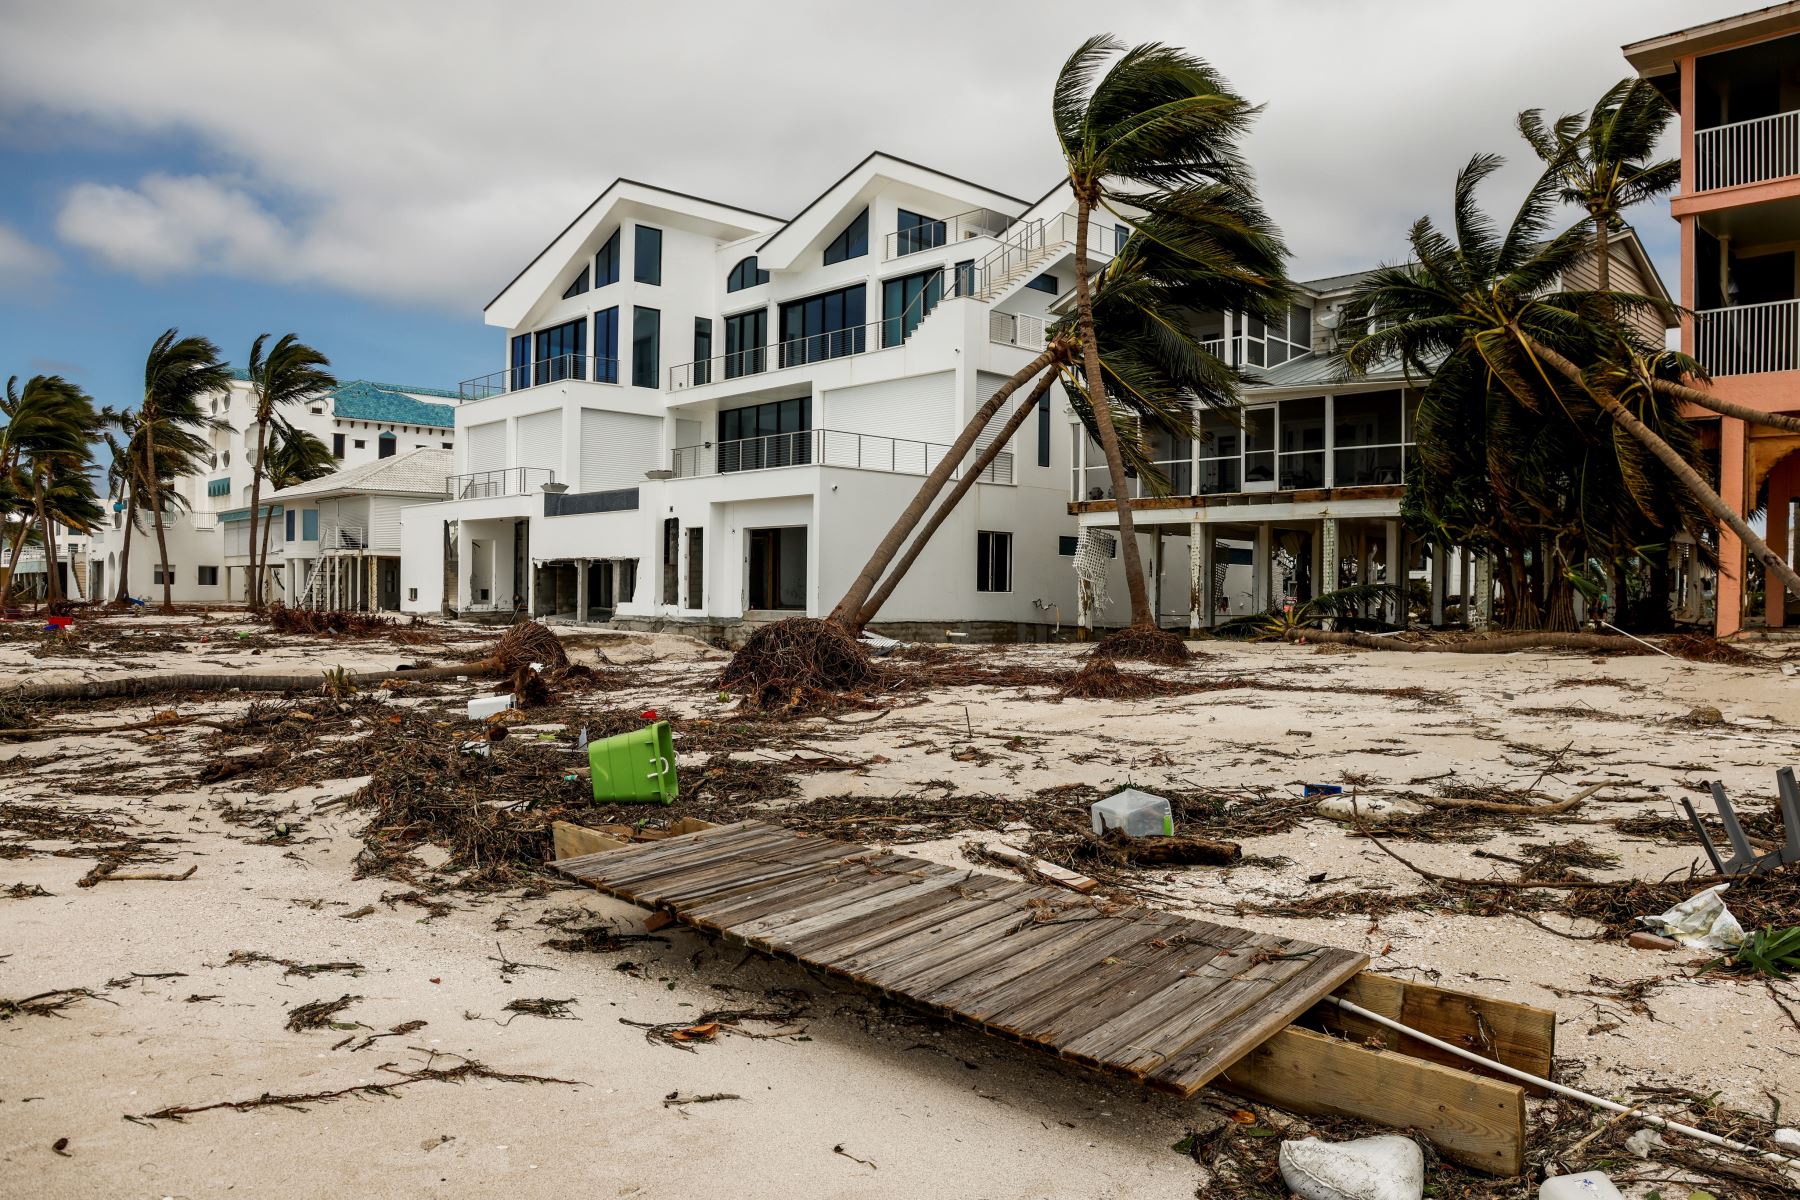 Daños a la propiedad en viviendas a raíz del huracán Ian en Bonita Shores, Florida, Estados Unidos, el 29 de septiembre de 2022. Foto: EFE